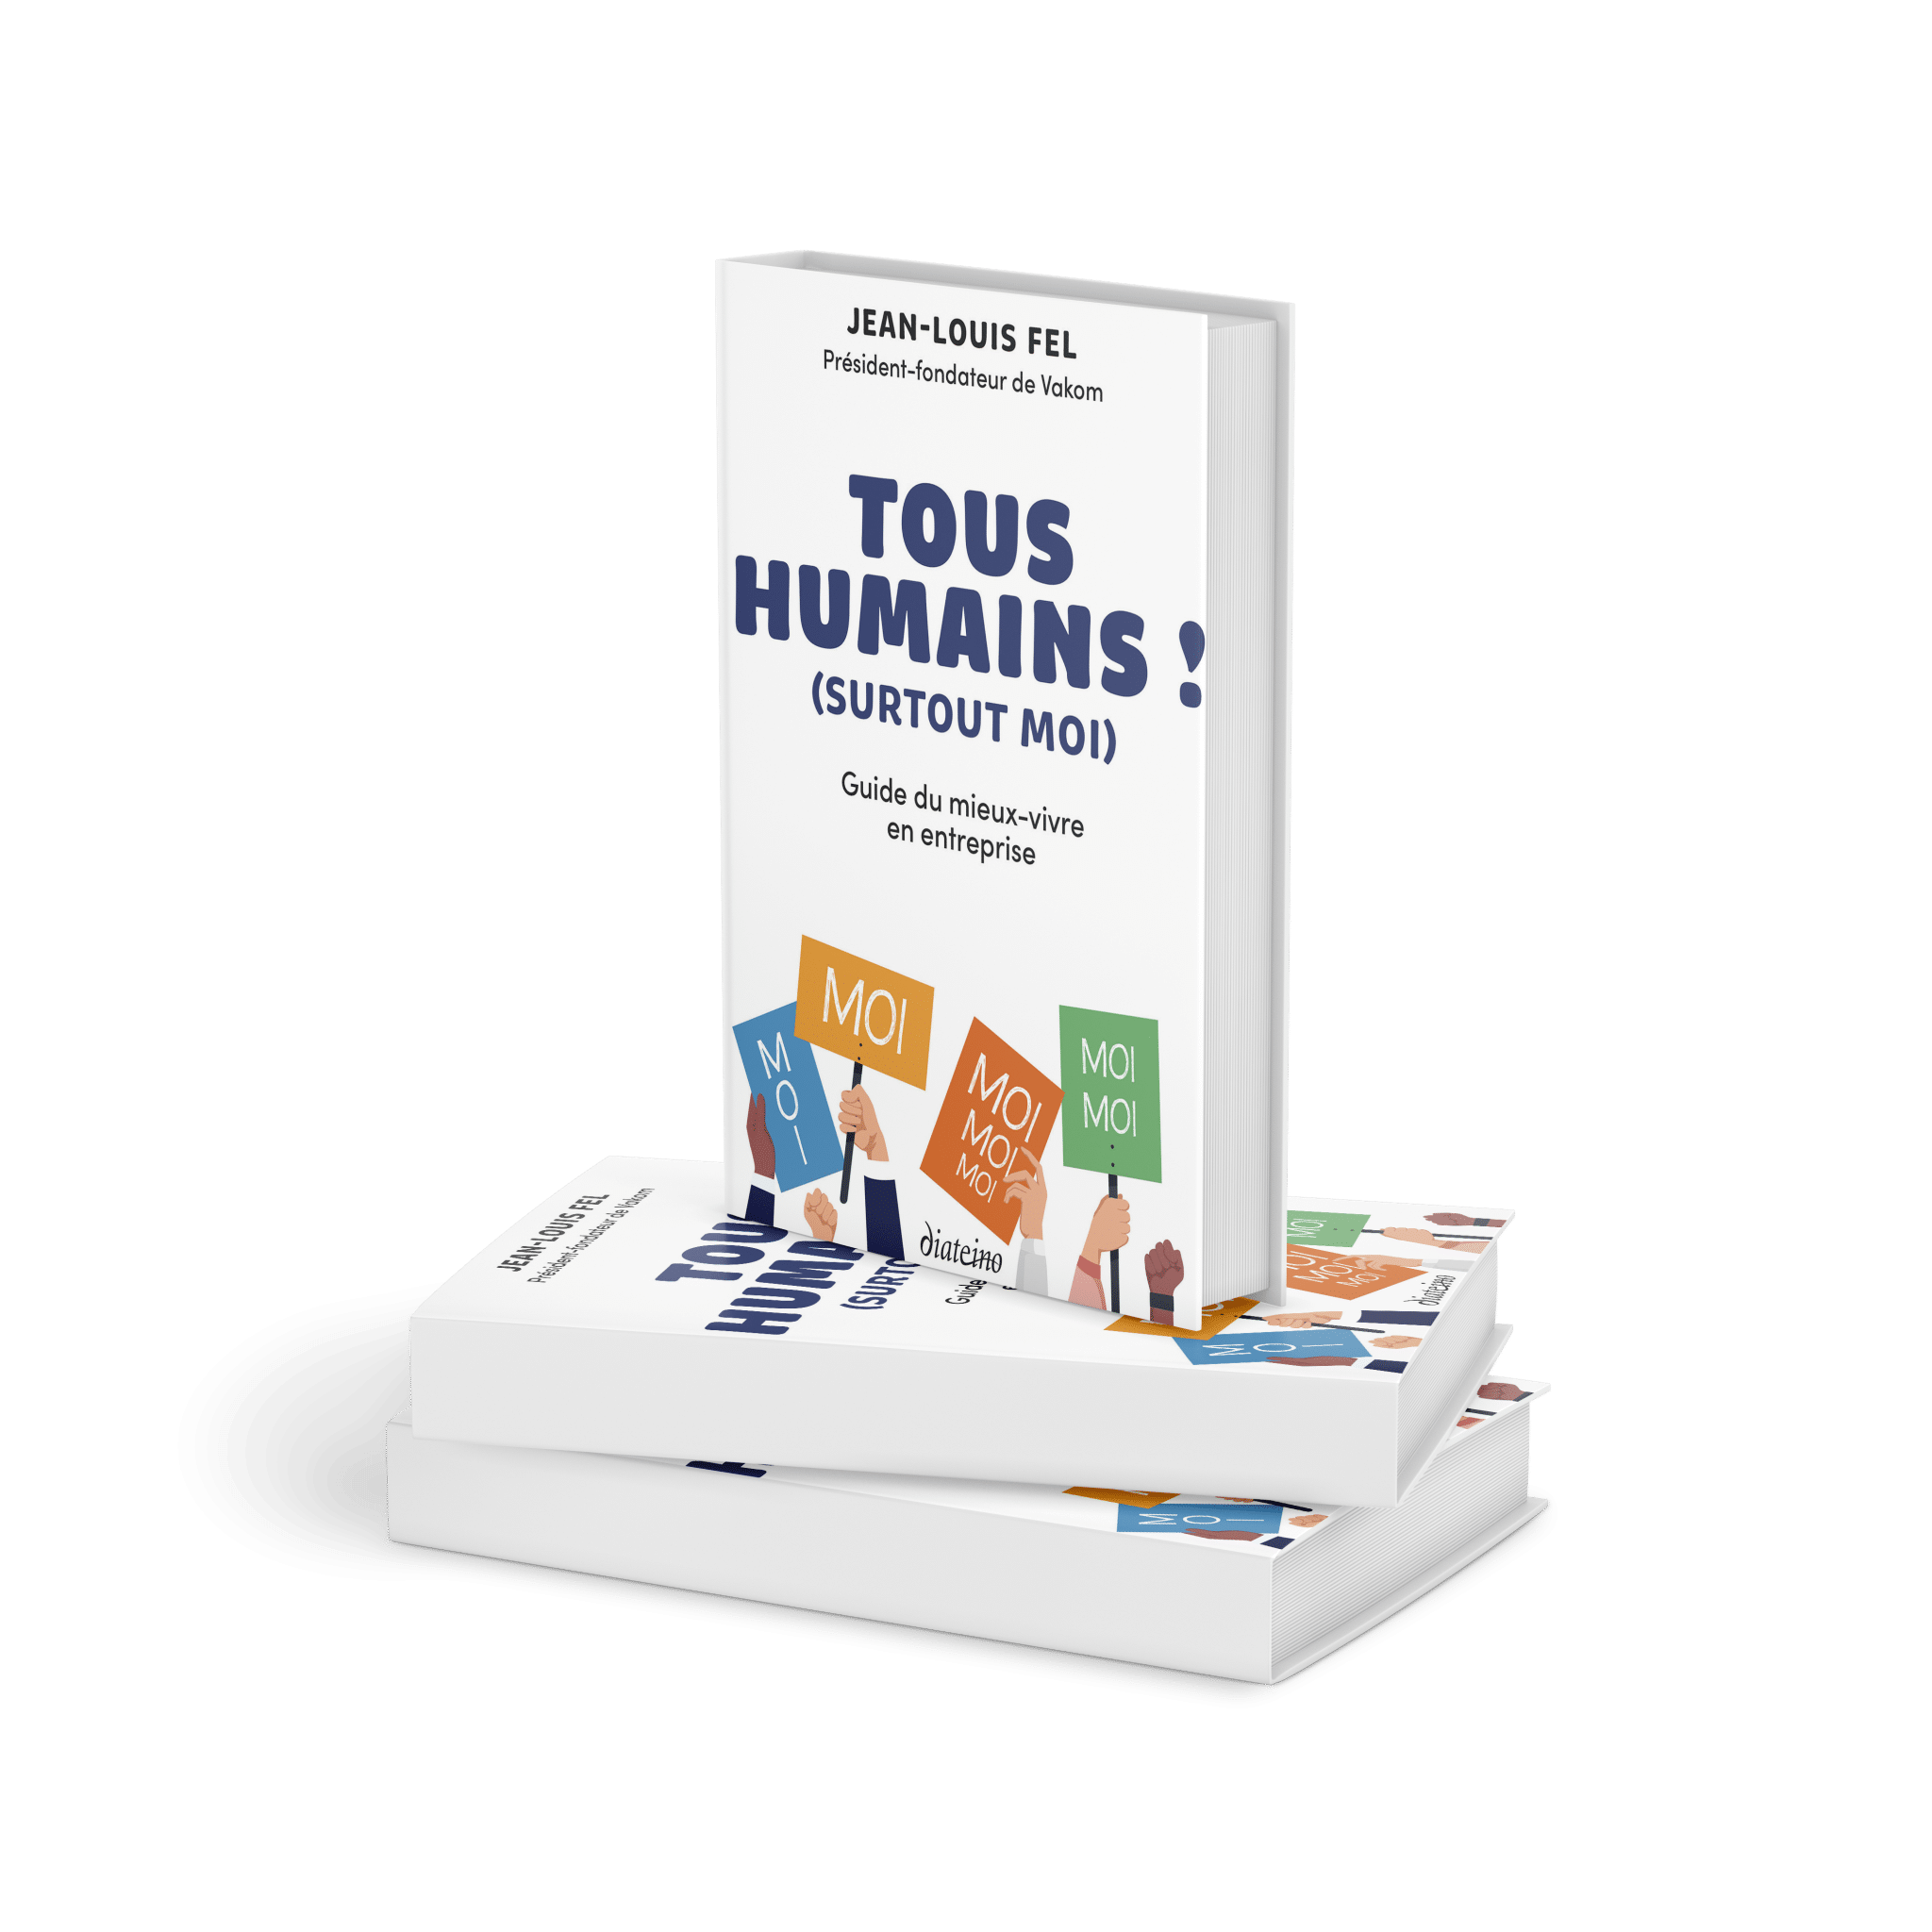 Le dernier livre de JeanLouis FEL, Tous Humains (surtout moi) aux éditions Diateino